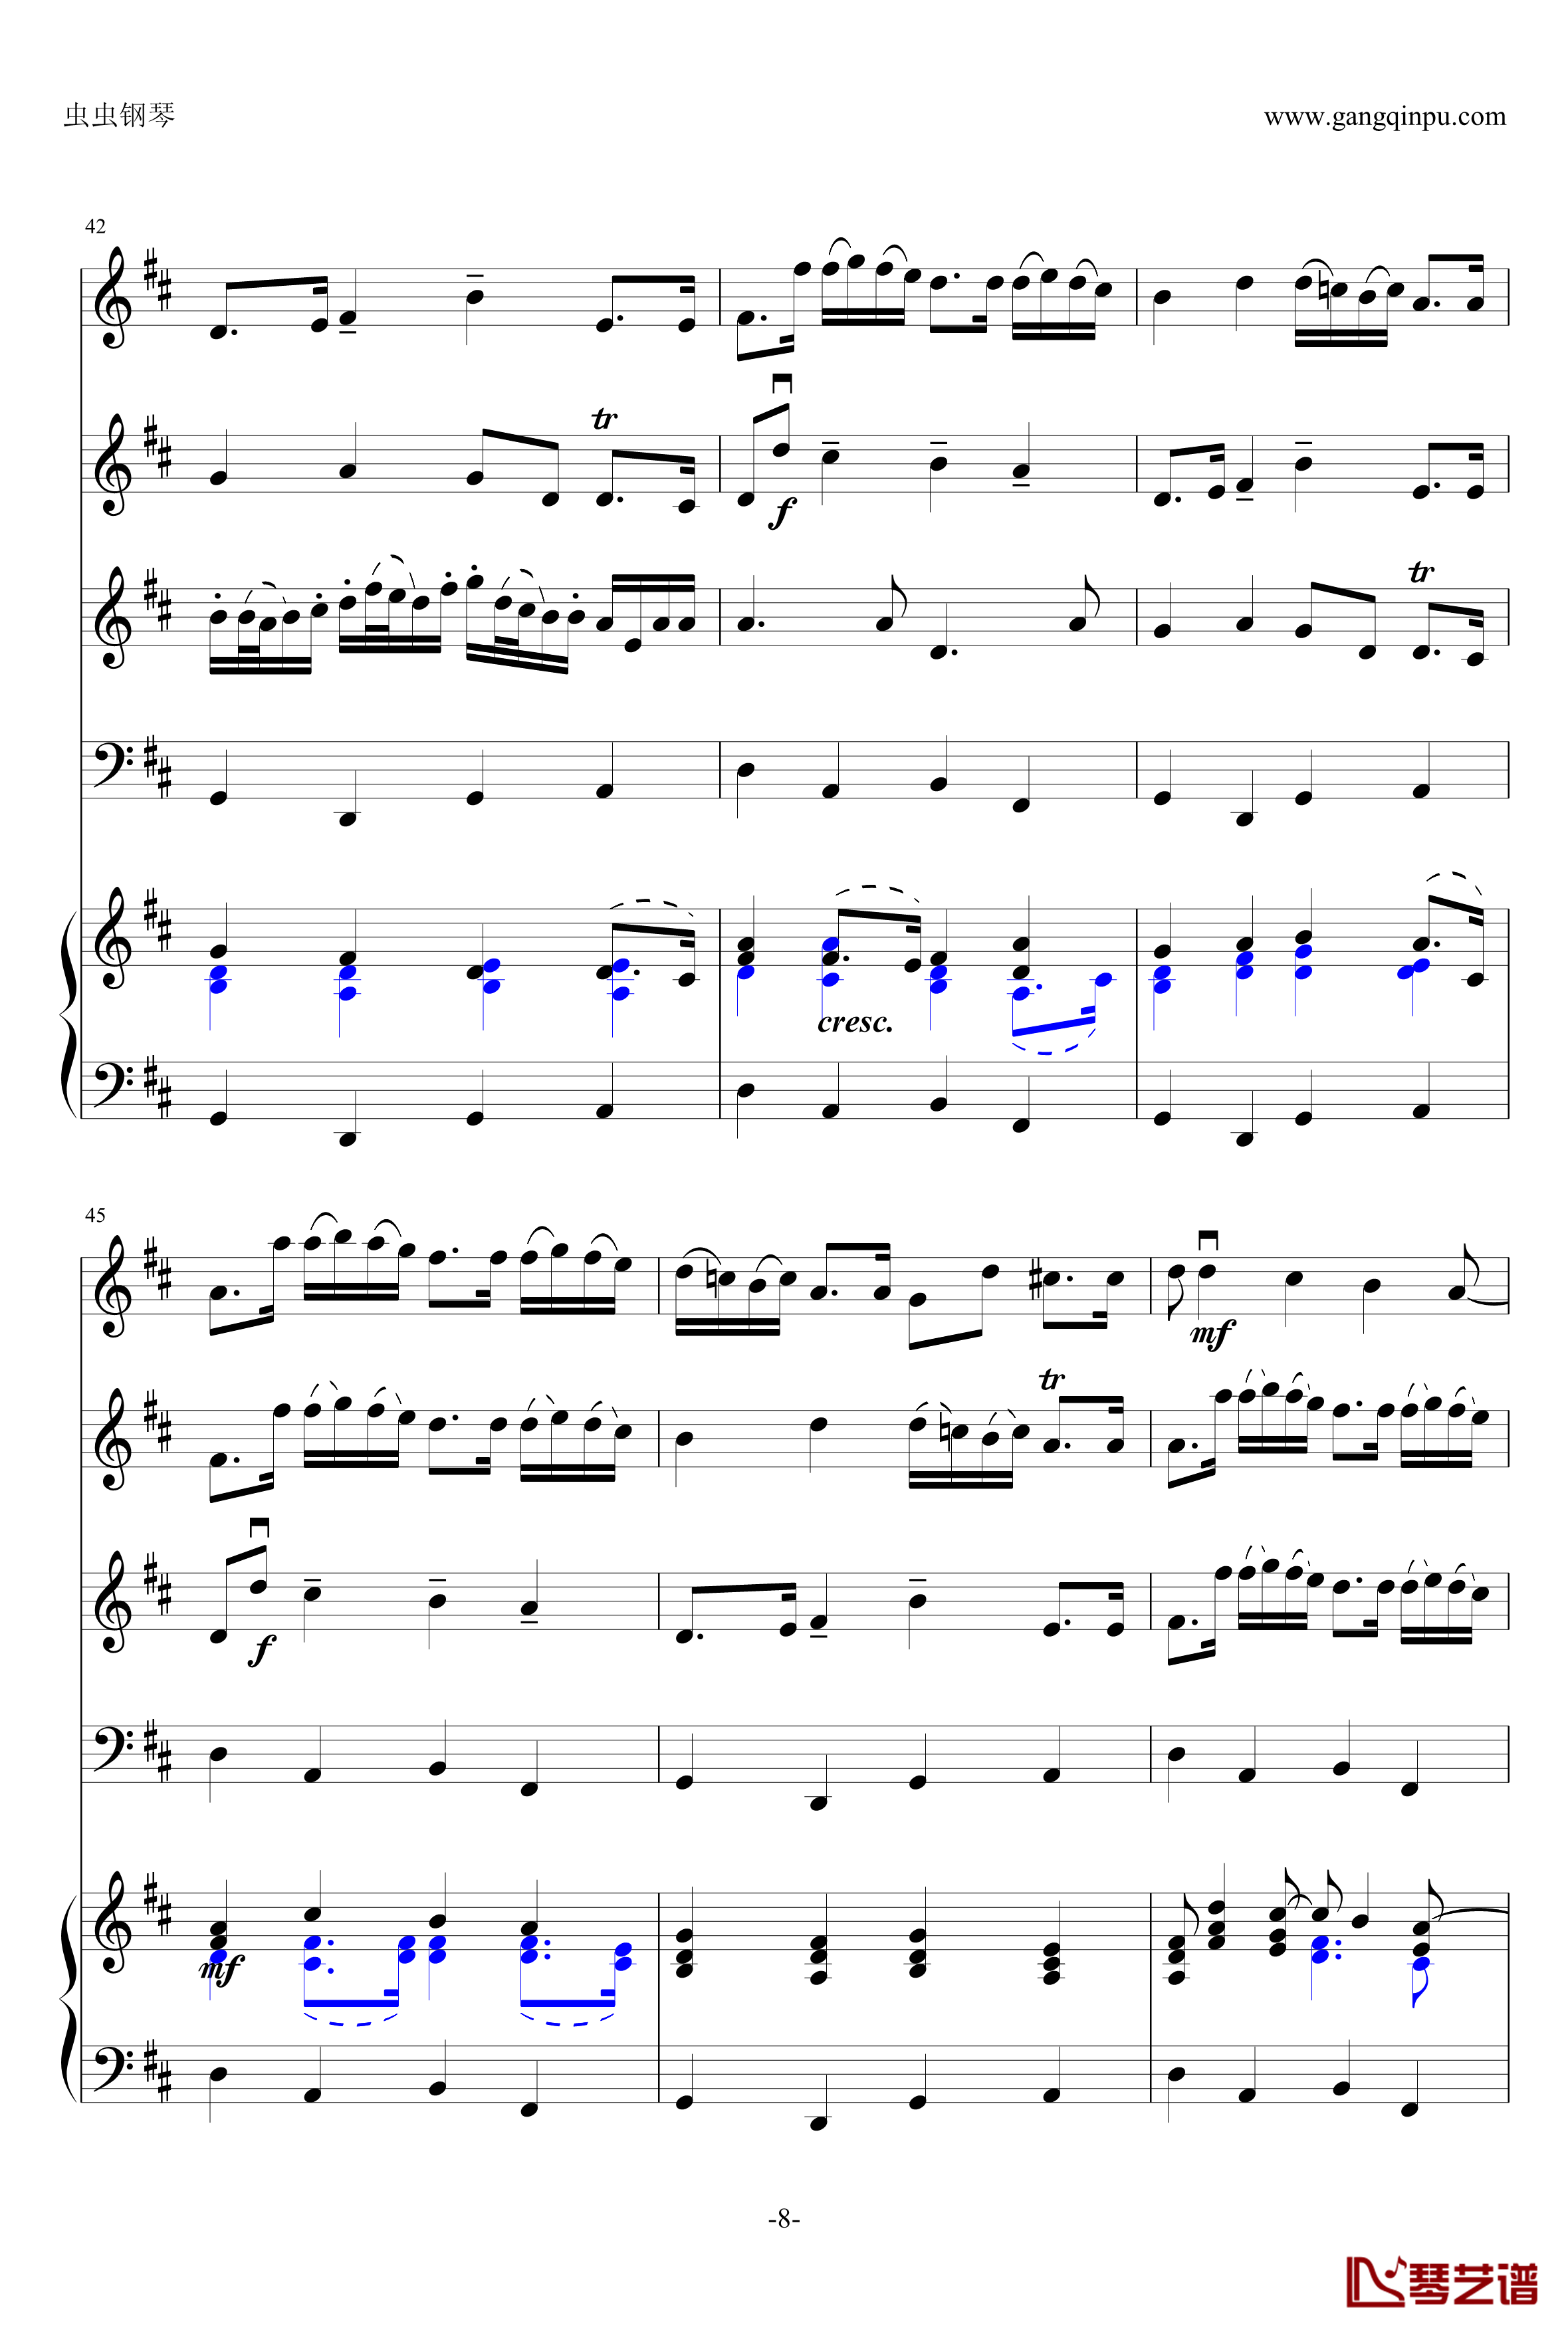 卡农钢琴谱-原版引进-帕赫贝尔-Pachelbel8